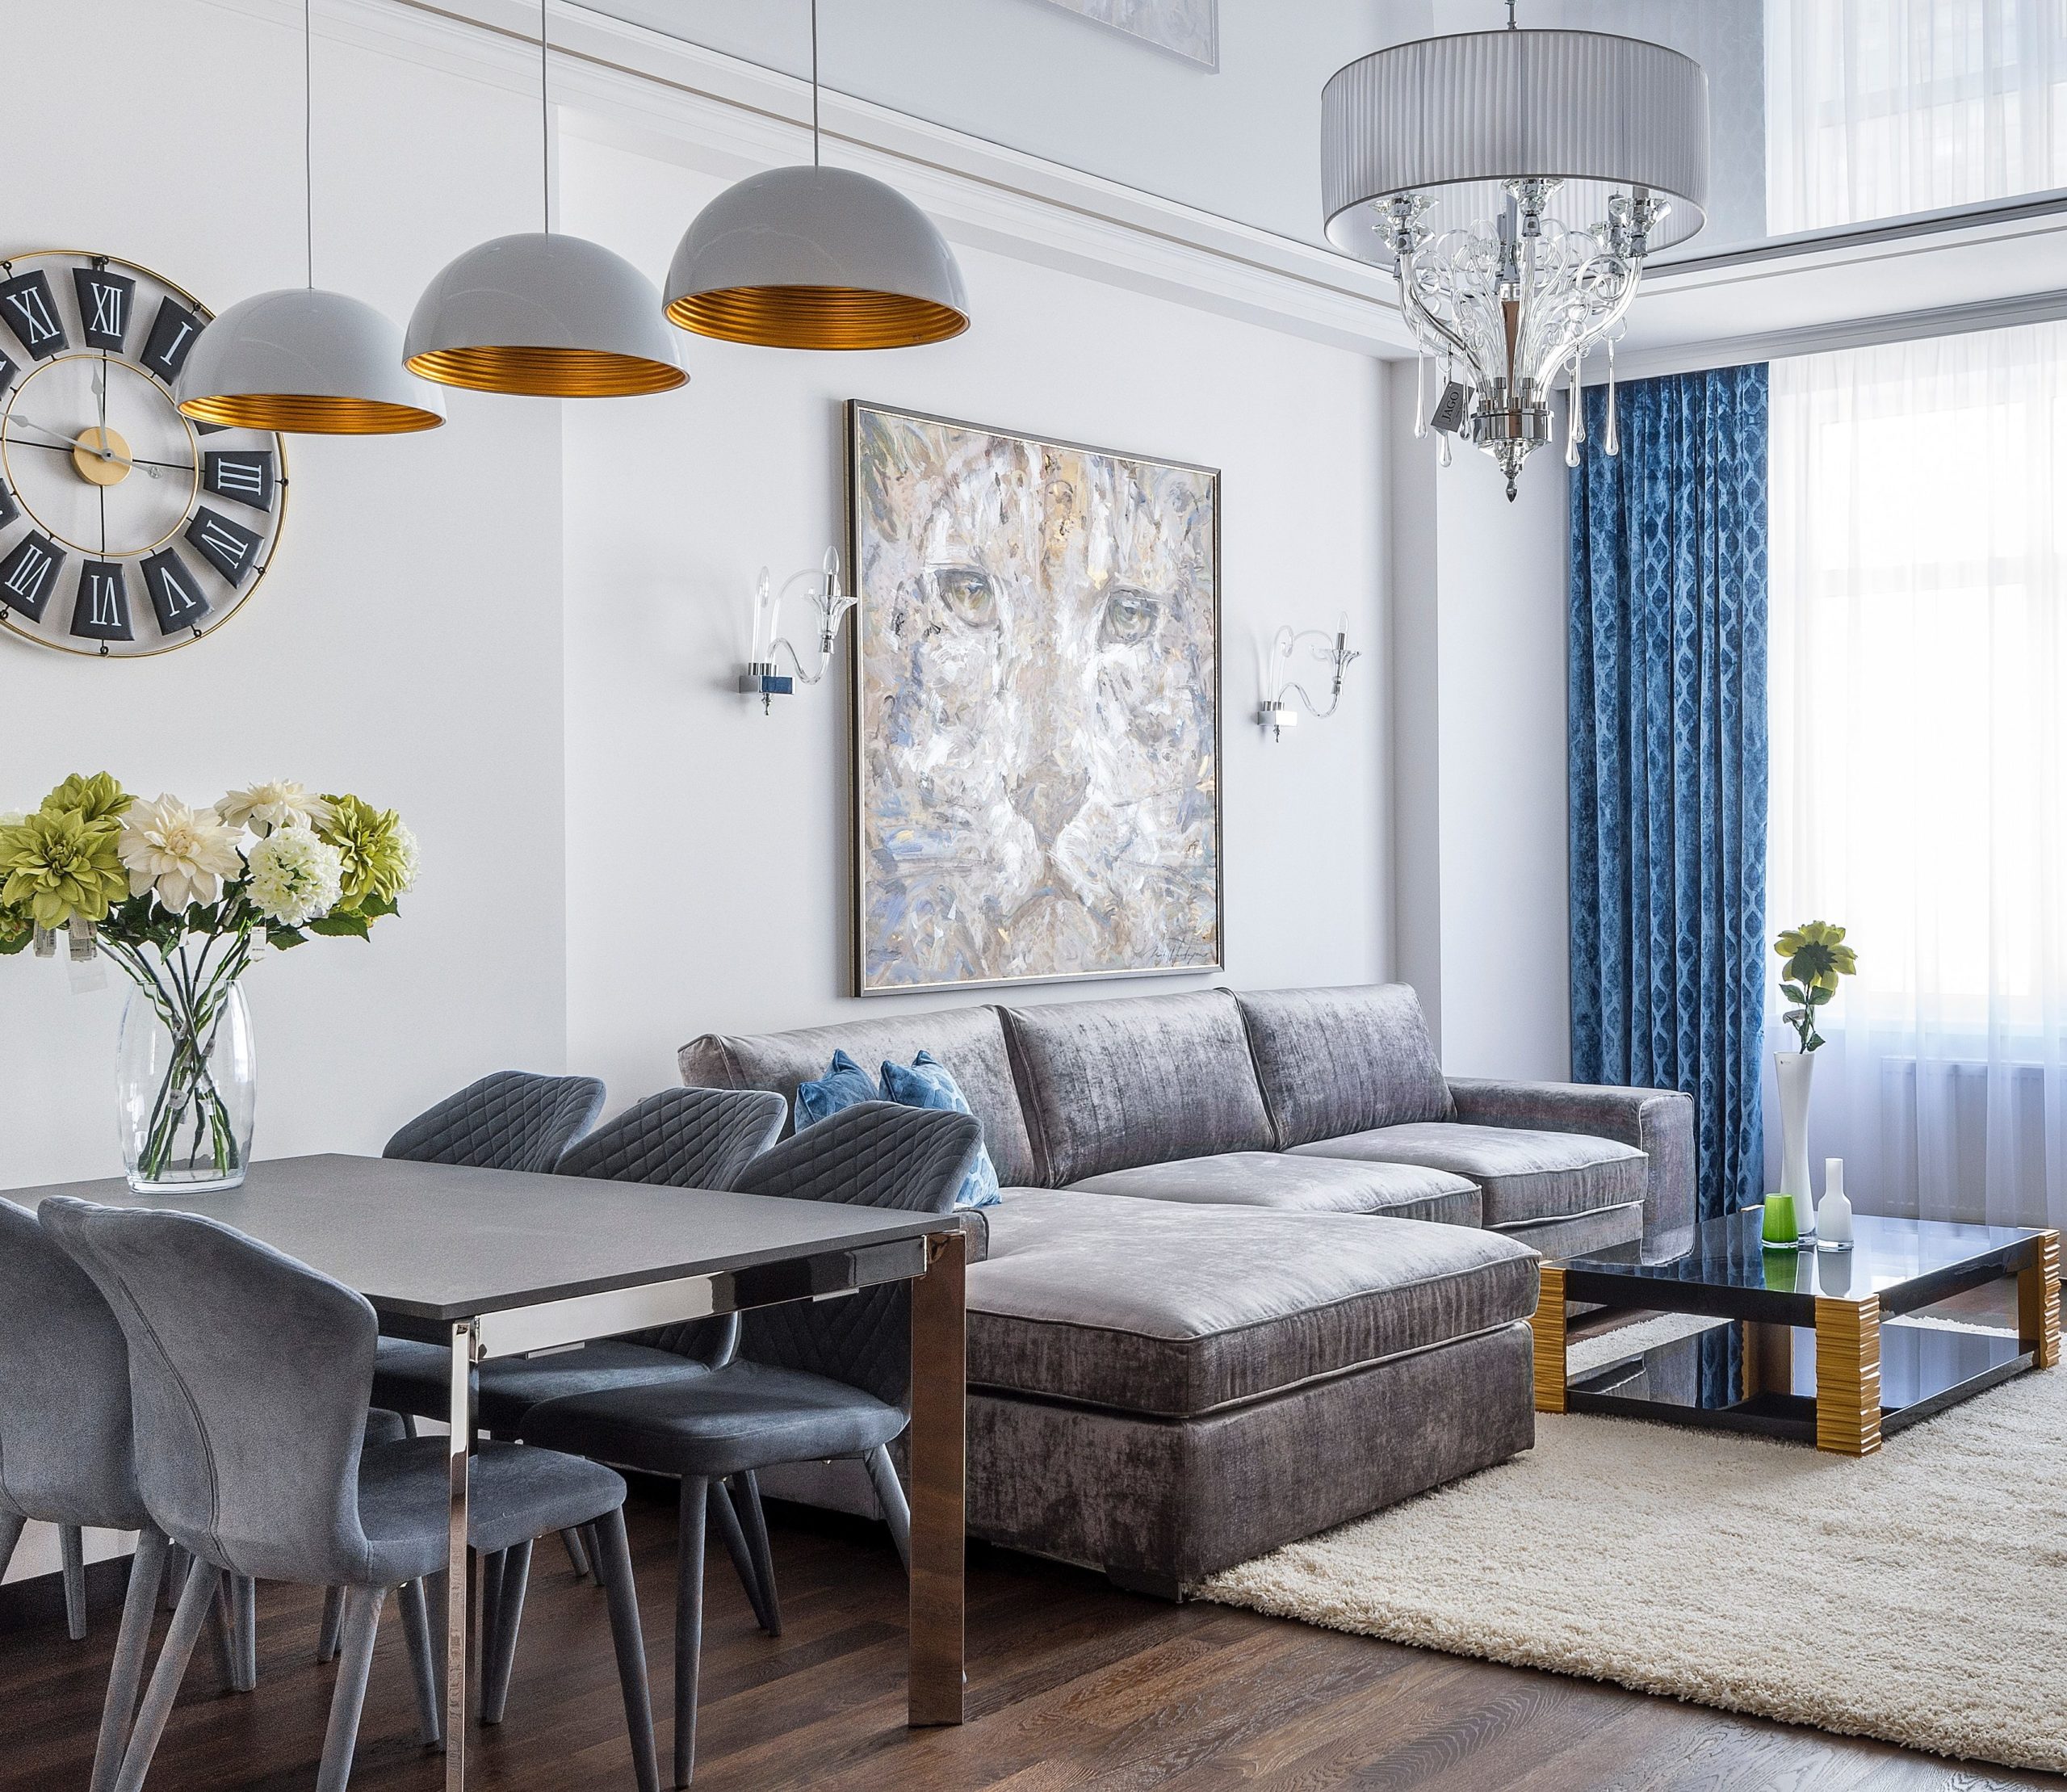 Sala de estar integrada com sala de janta em tons de cinza e cortina azul estampada. 